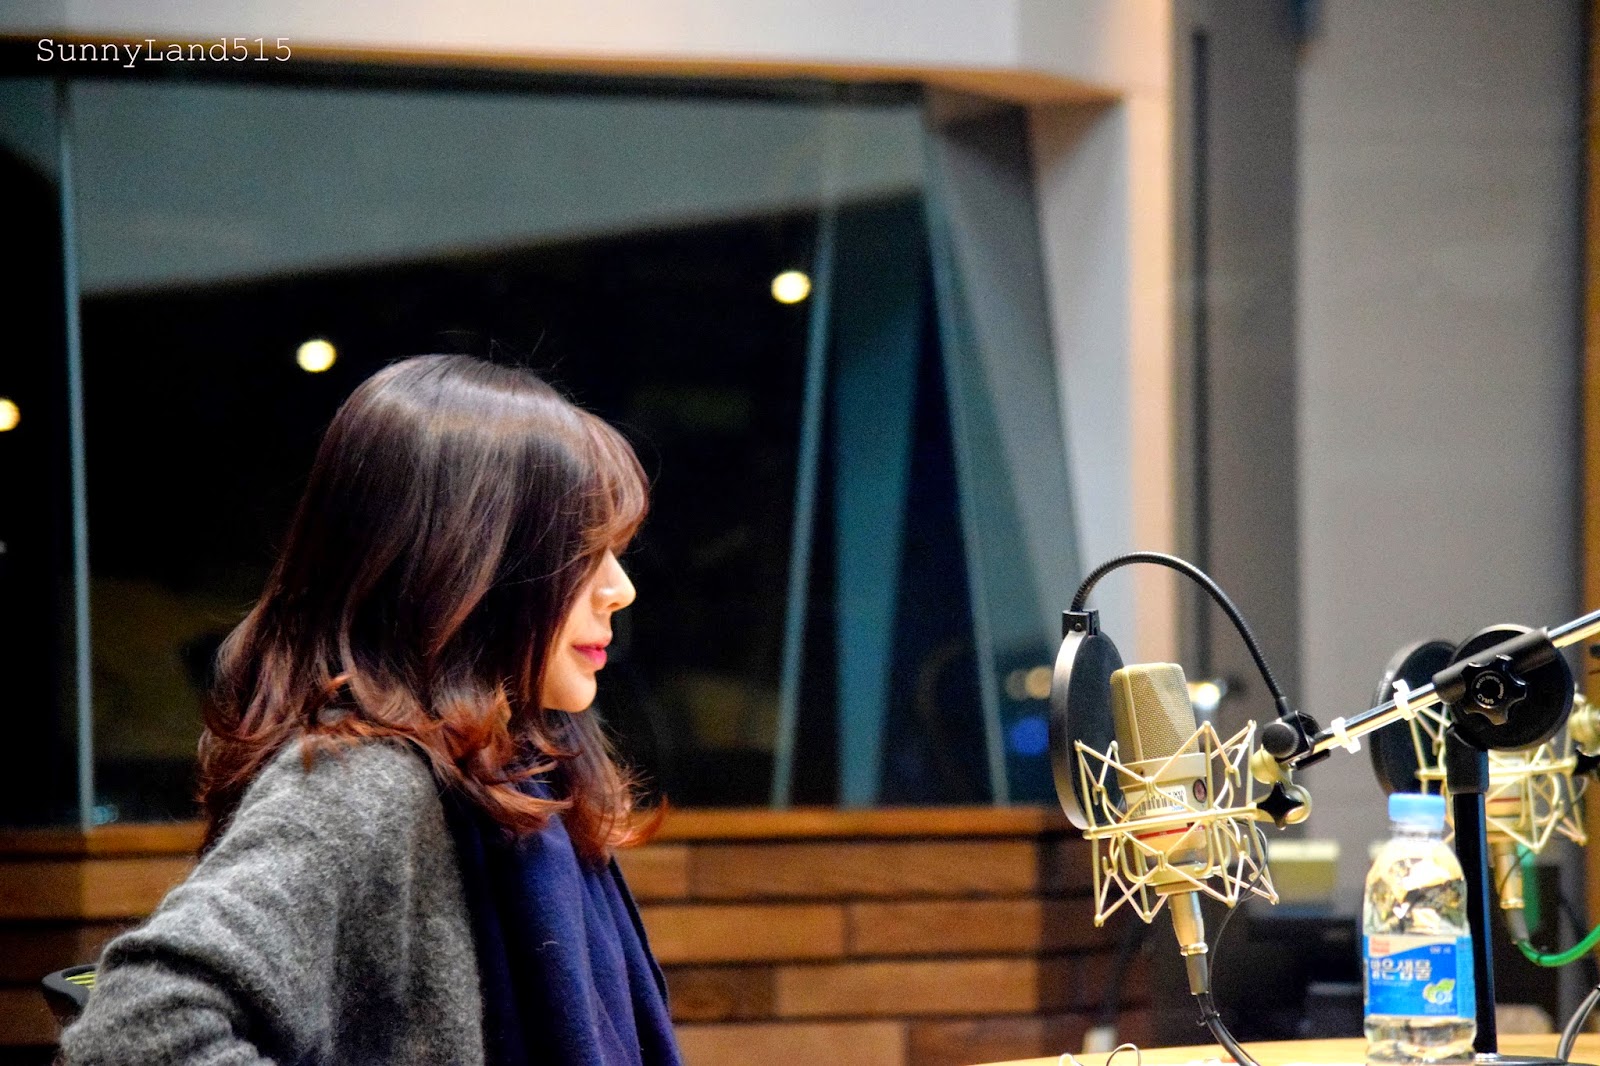 [OTHER][06-02-2015]Hình ảnh mới nhất từ DJ Sunny tại Radio MBC FM4U - "FM Date" - Page 10 DSC_0013_Fotor